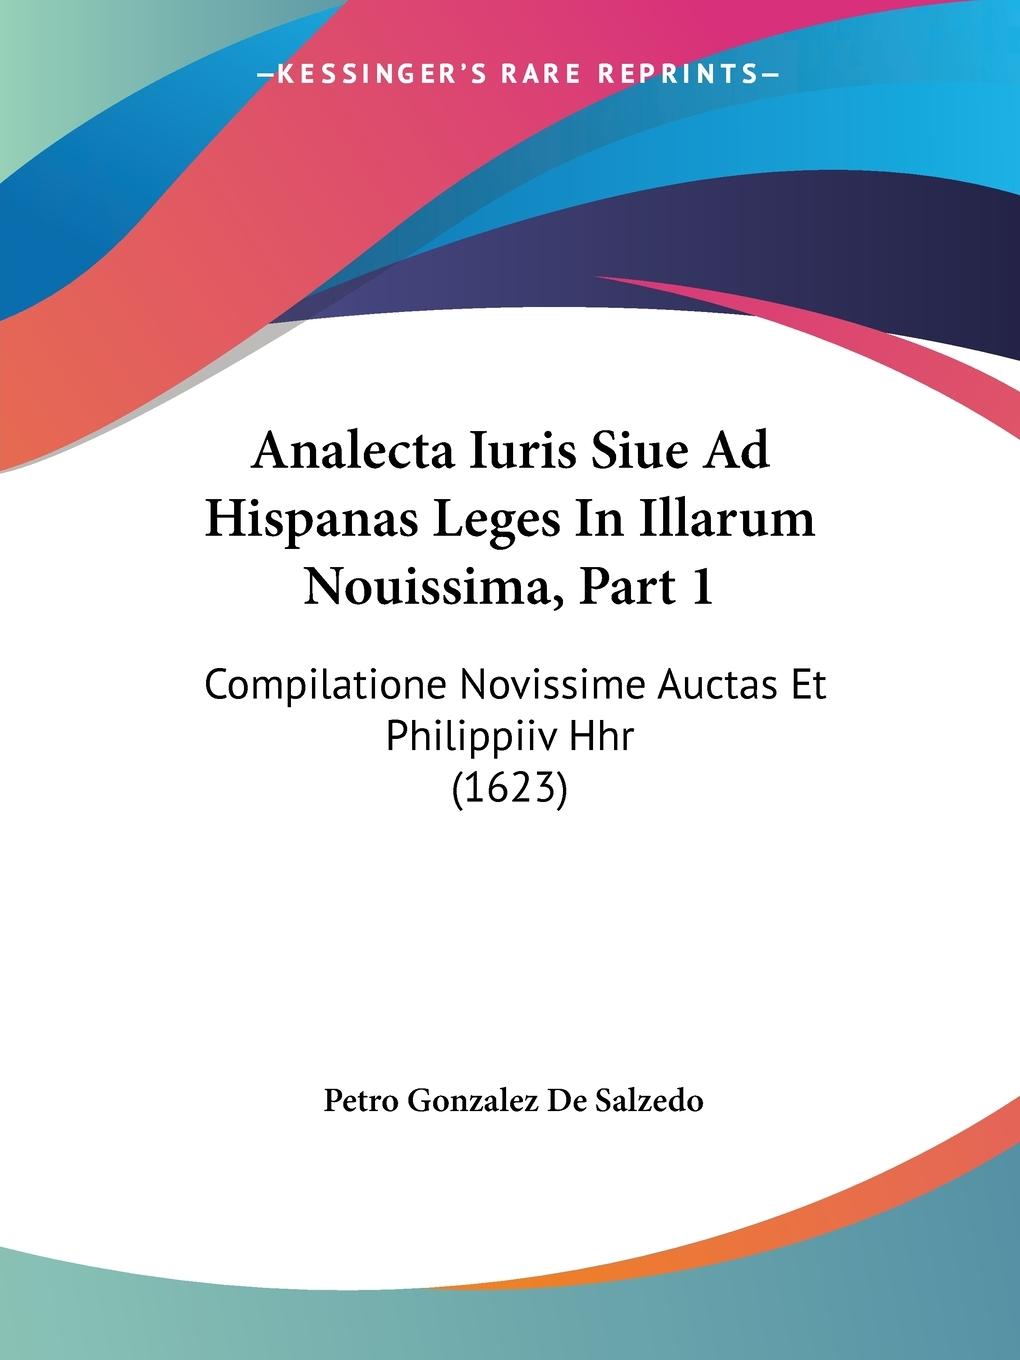 Analecta Iuris Siue Ad Hispanas Leges In Illarum Nouissima, Part 1 - De Salzedo, Petro Gonzalez